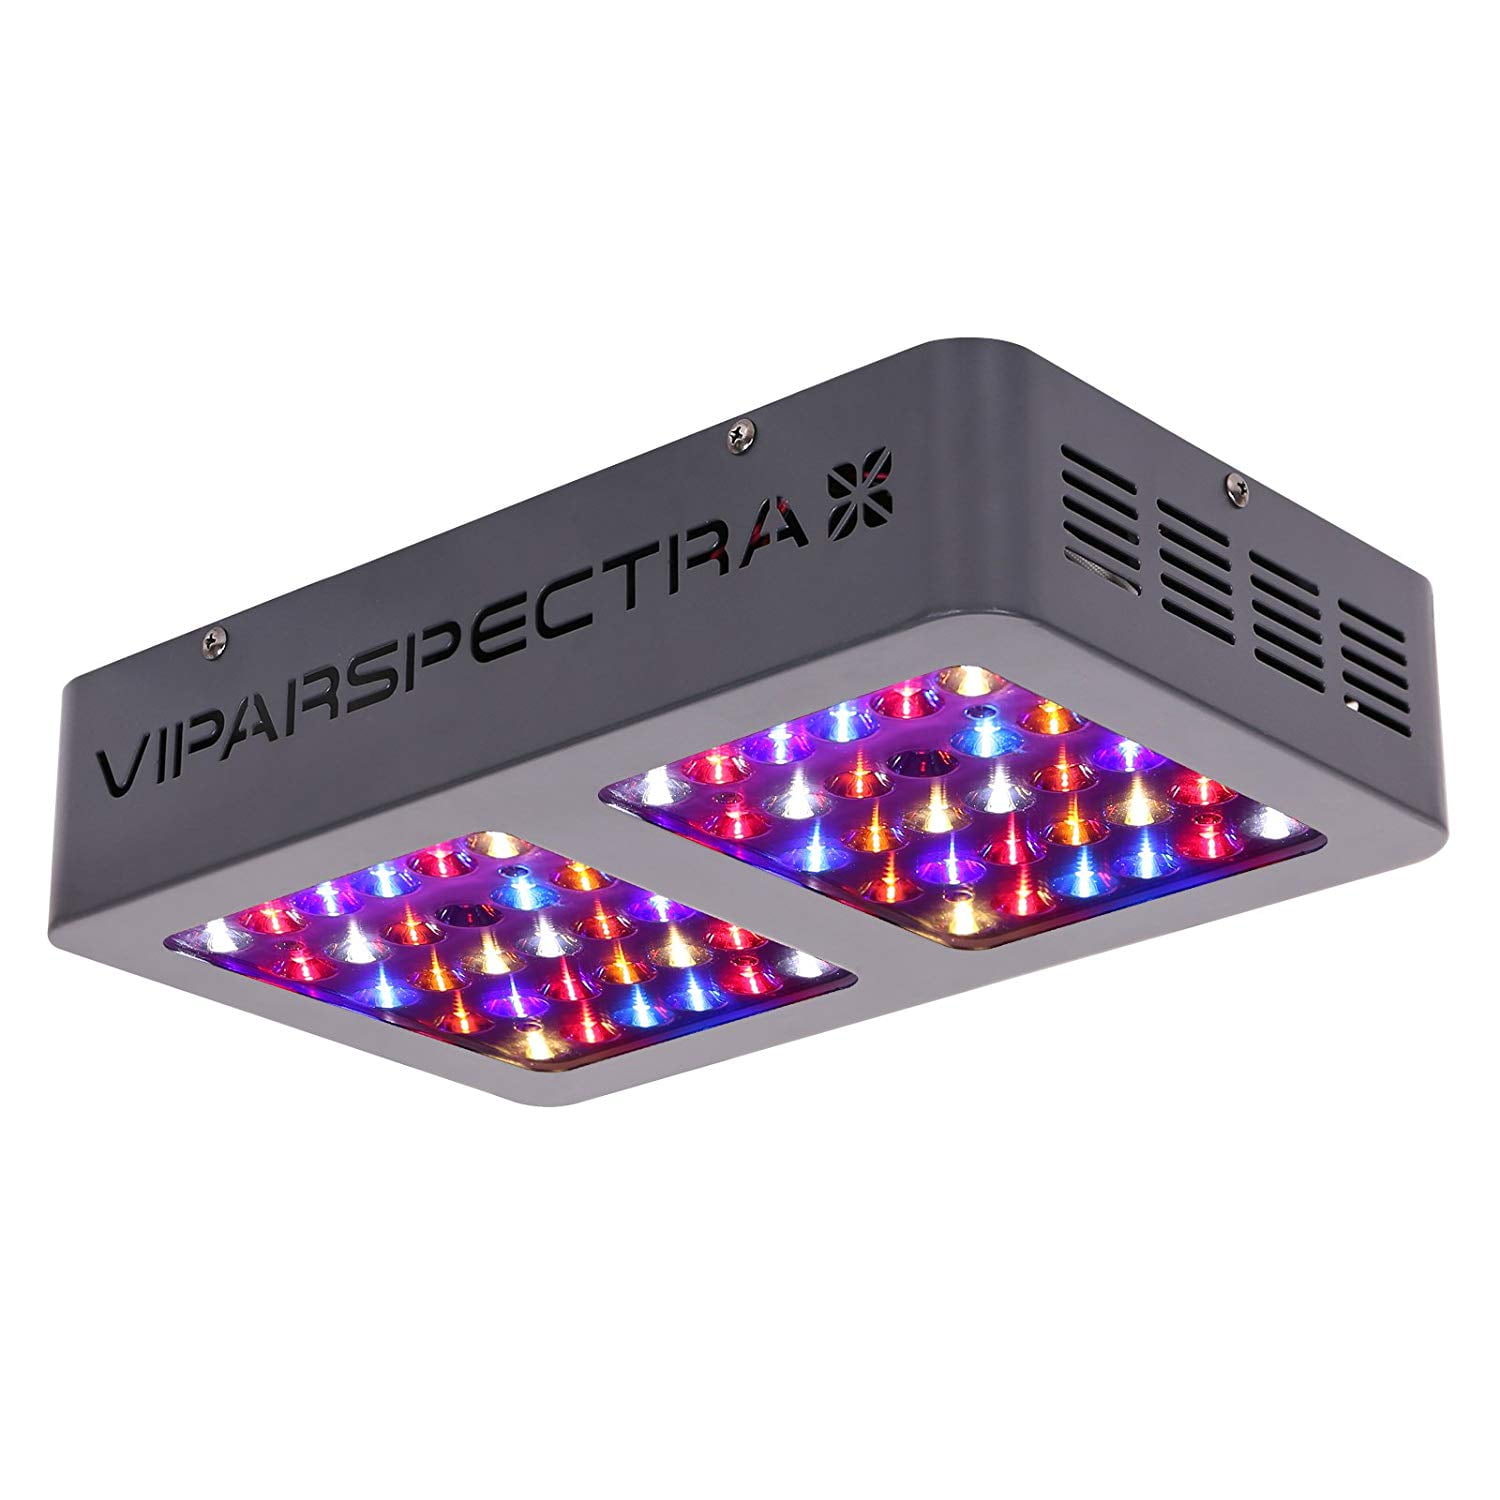 VIPARSPECTRA Latest 600W LED Grow Light Full Spectrum for Hydroponics Veg&Flower 